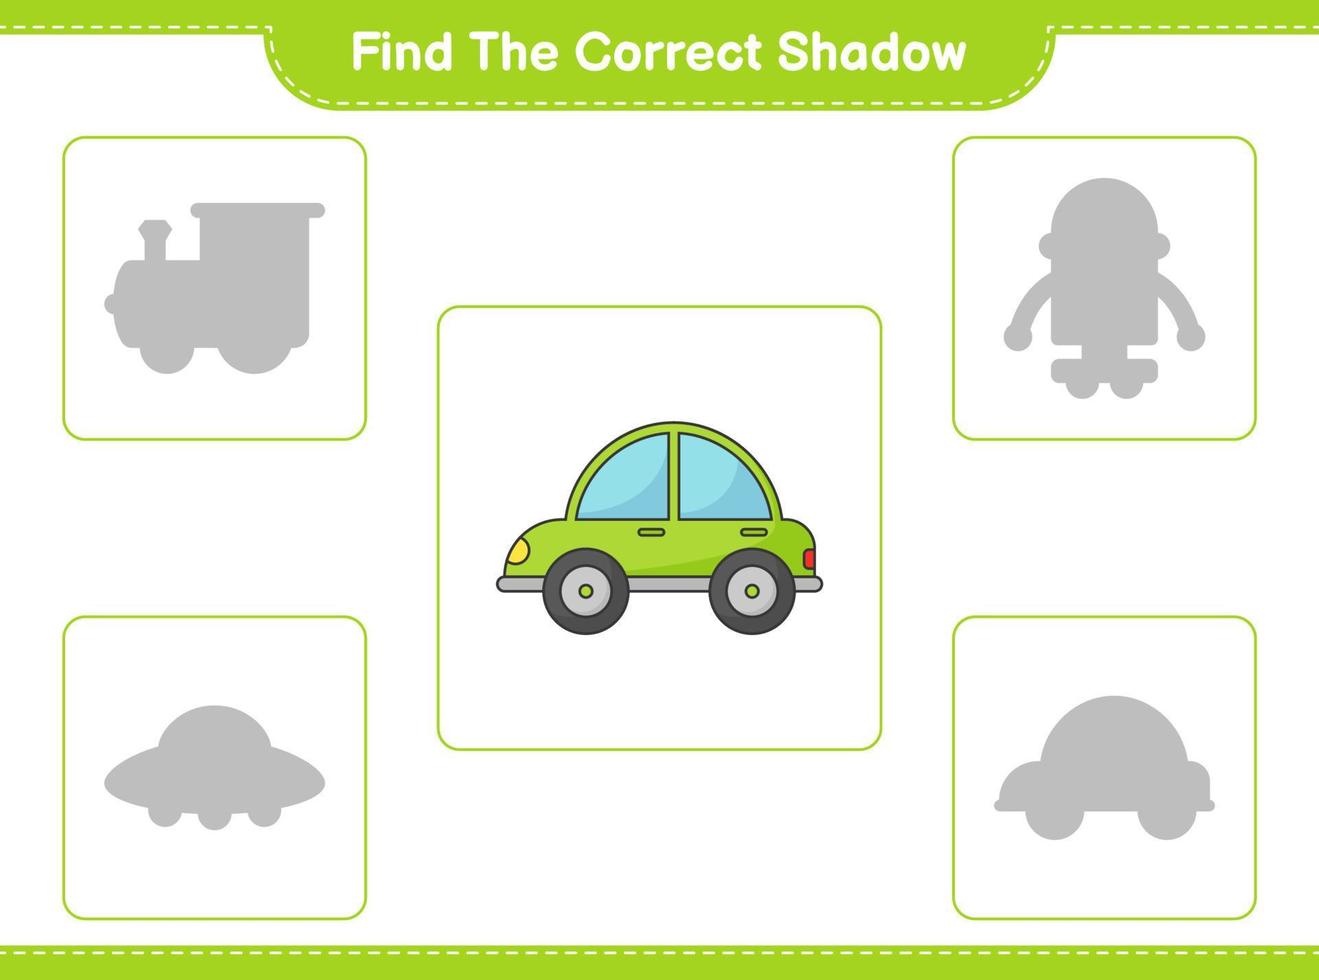 encontre a sombra correta. encontre e combine a sombra correta do carro. jogo educacional para crianças, planilha para impressão, ilustração vetorial vetor